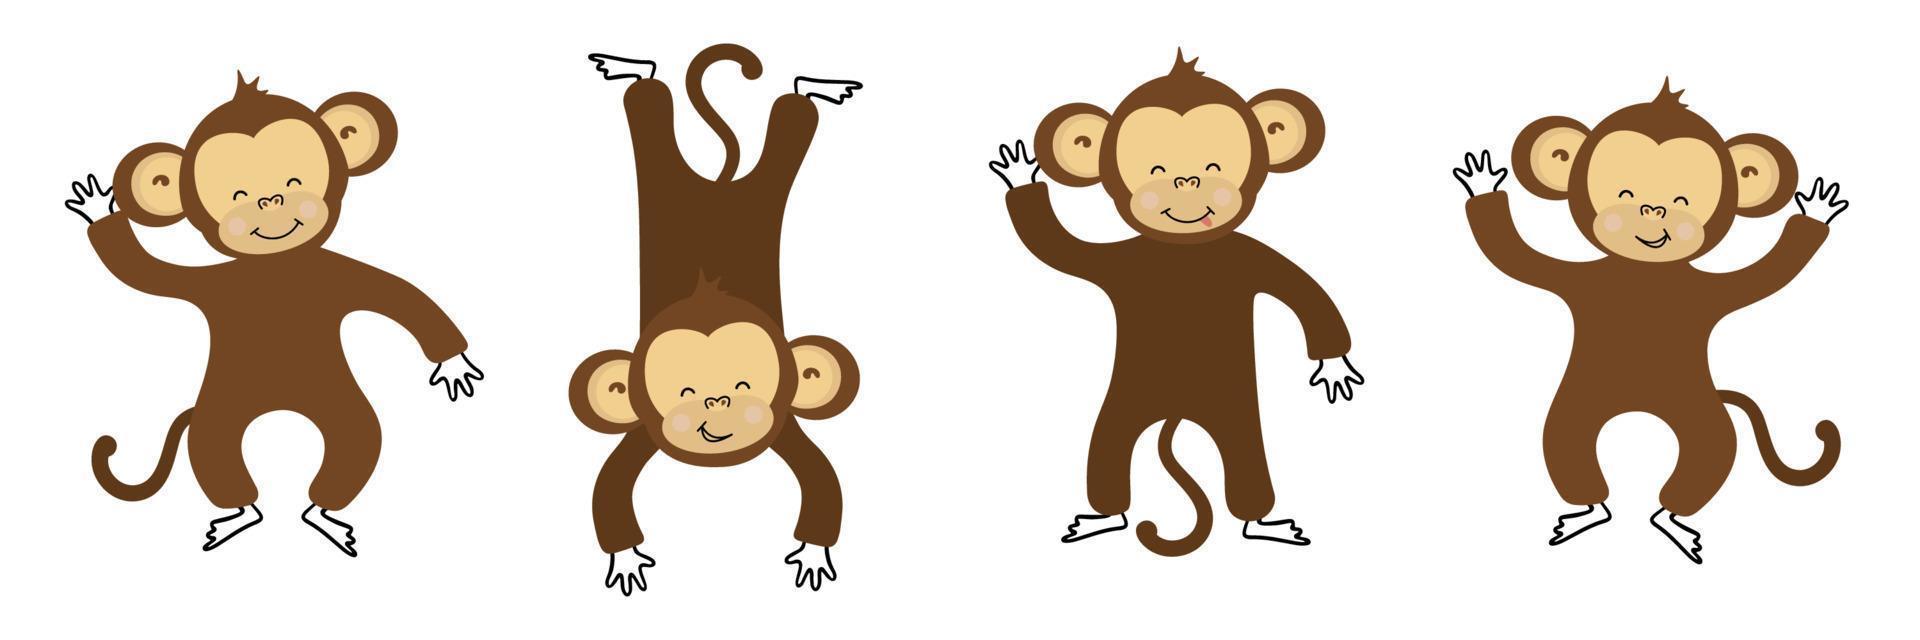 coleção colorida de macacos engraçados bonitos 16645685 Vetor no Vecteezy